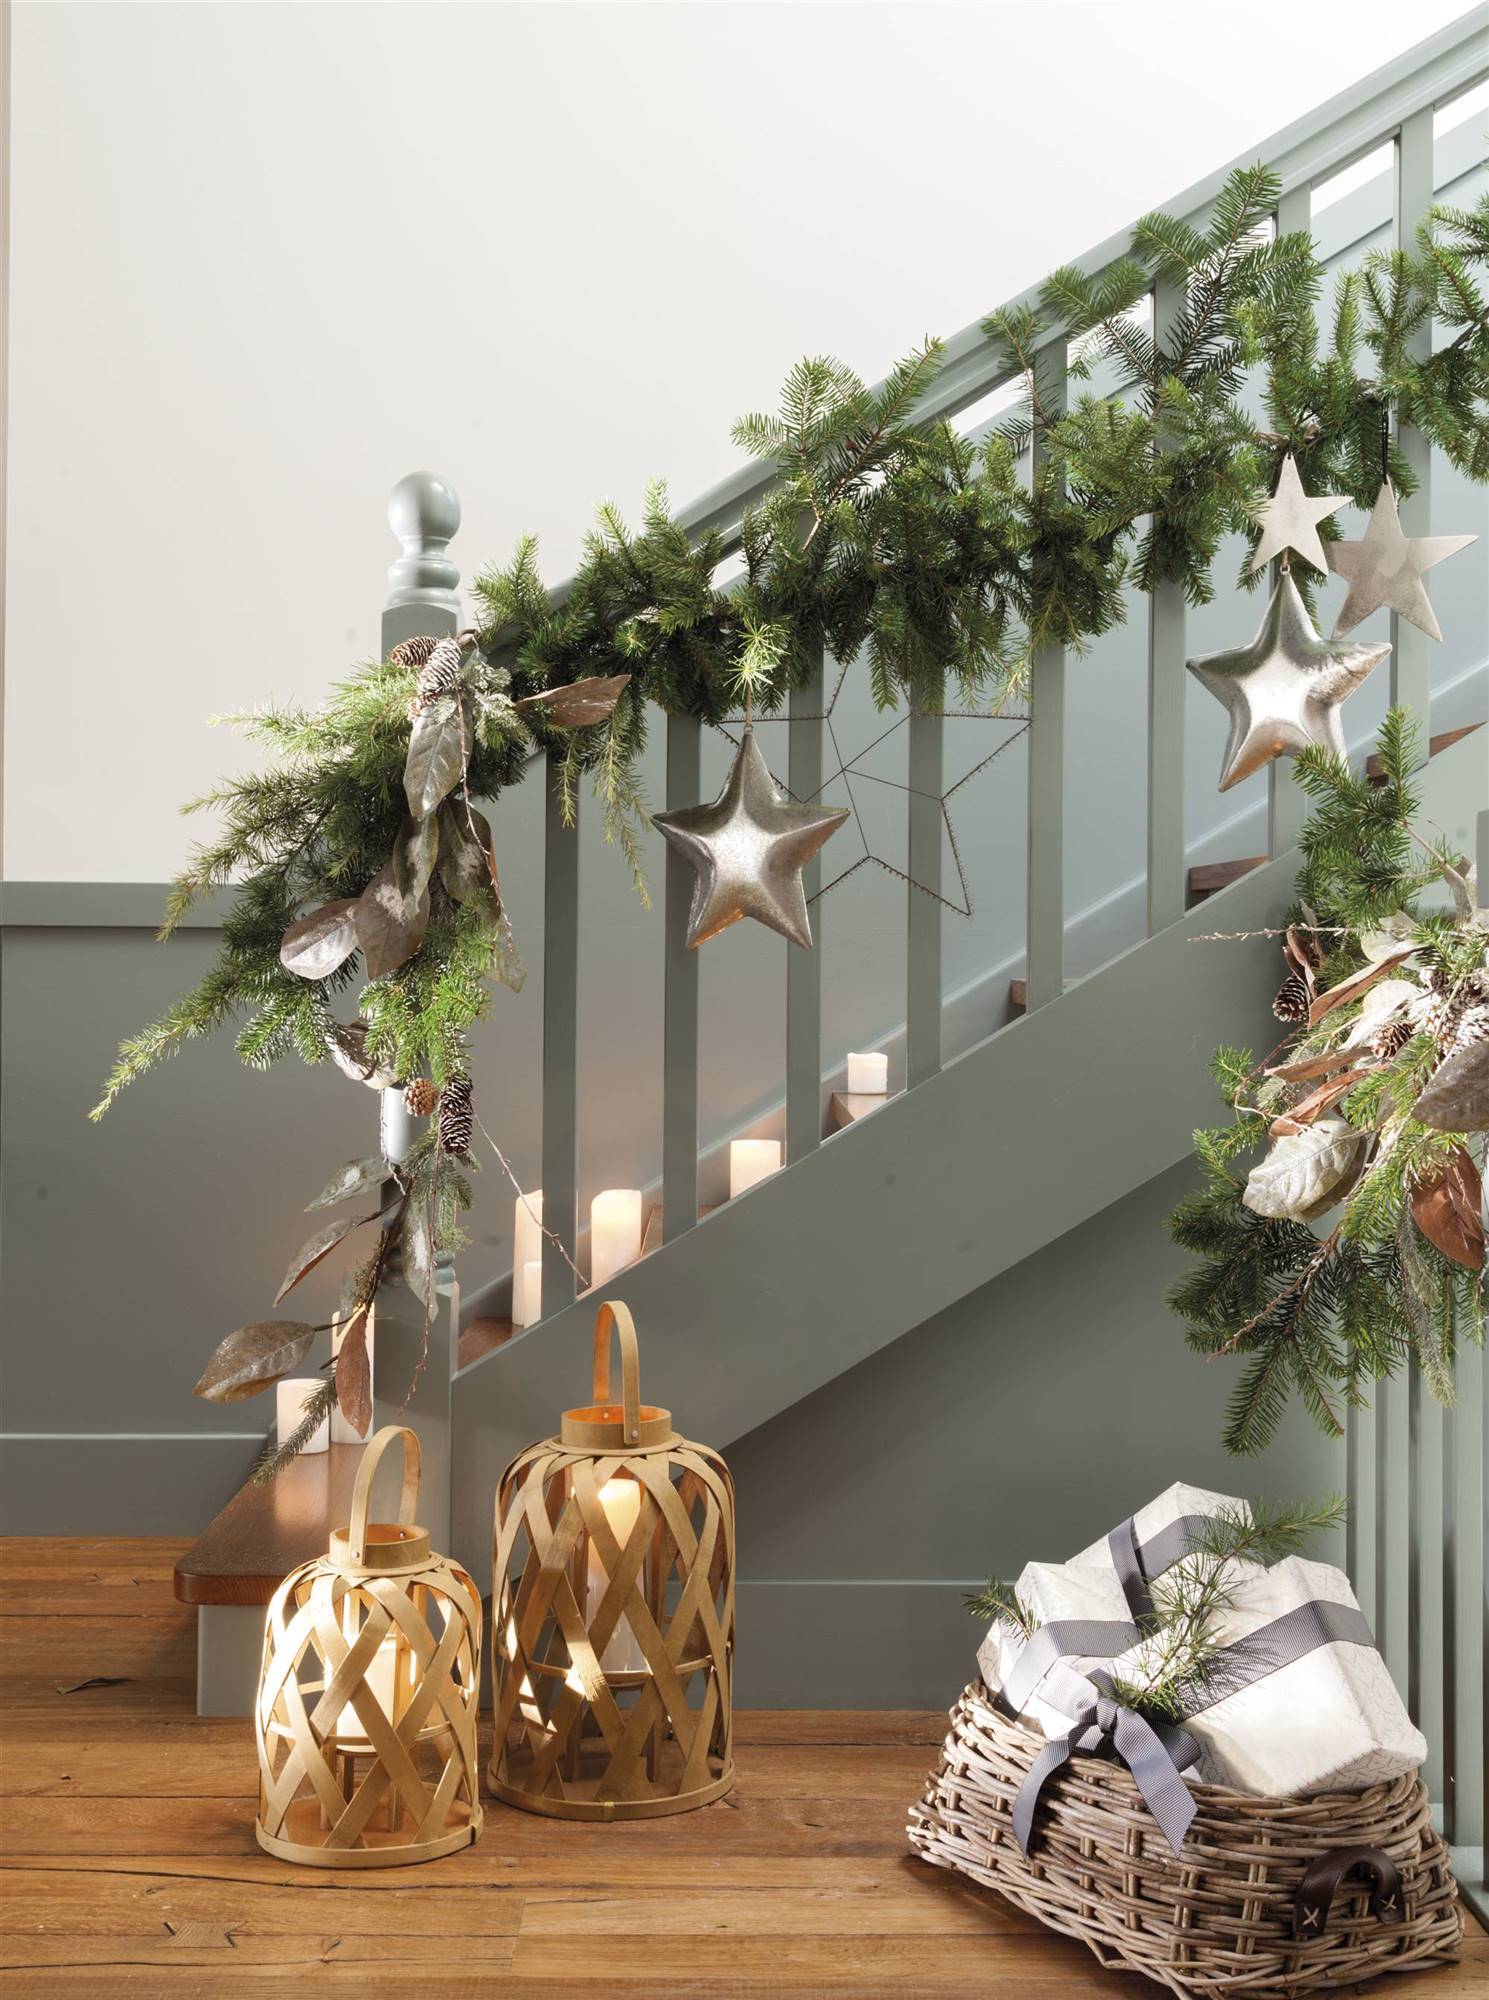 Escaleras decoradas en el recibidor por Navidad.